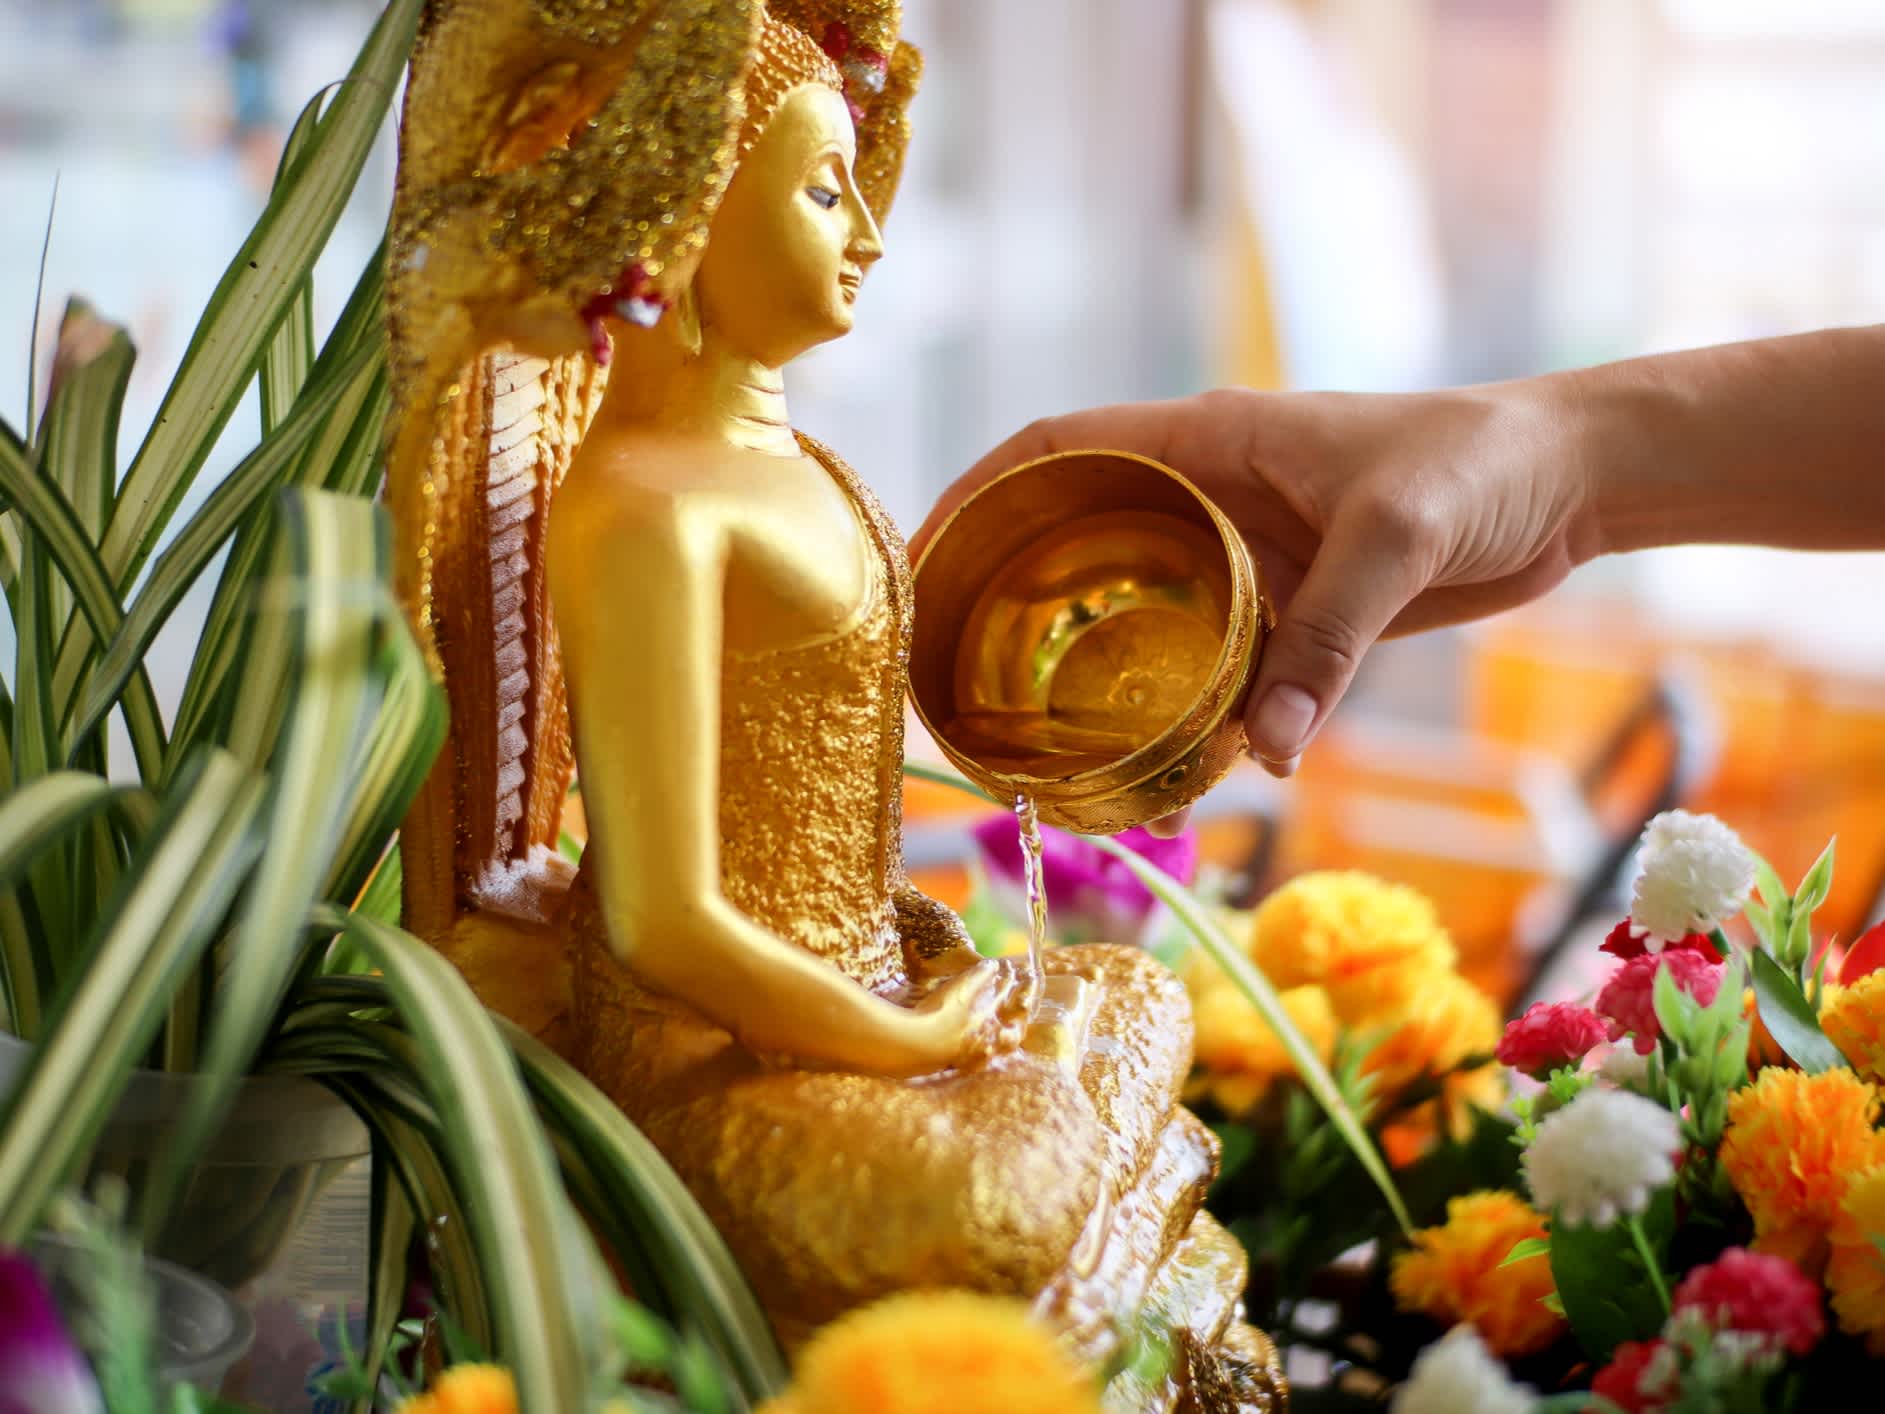 Main d'une femme répandant de l'eau sur une statue dorée de Bouddha lors du Songkran Festival en Thaïlande.